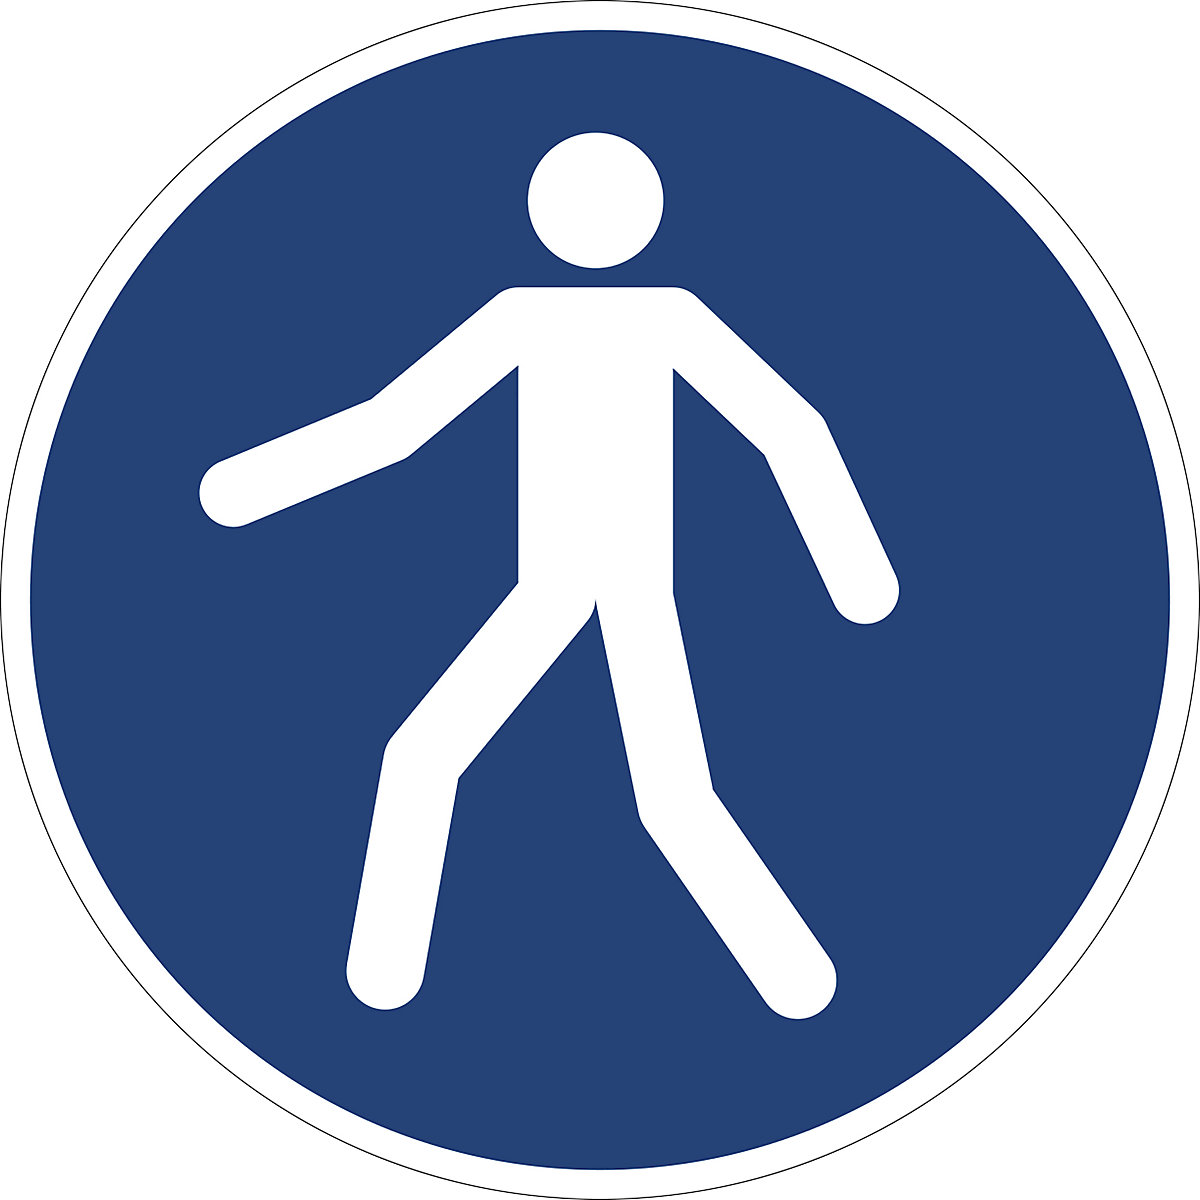 Příkazová značka, Použijte cestu pro chodce, bal.j. 10 ks, fólie, Ø 200 mm